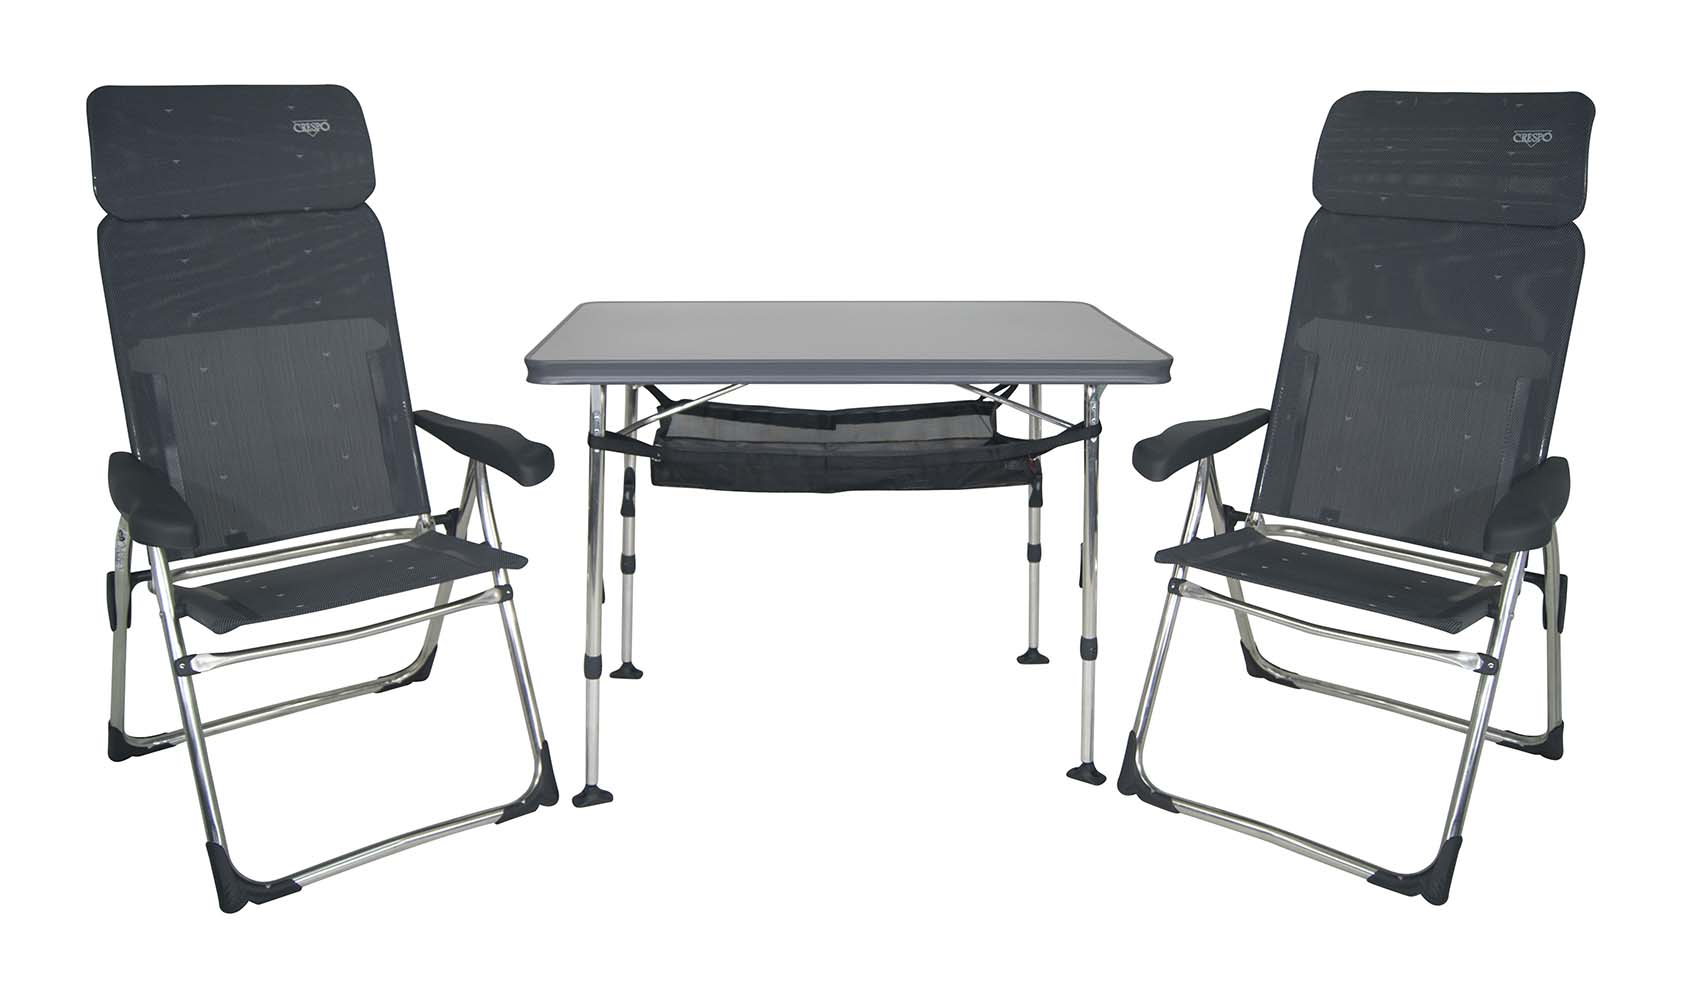 1153850 ¡Fantástico conjunto todo en uno!   Compuesto de mesa AL-246 + 2 sillas AL-213 Compact + red portaobjetos para la mesa y bolsa de transporte. ¡Todo en tan solo 16 cm de grosor! La mesa está fabricada con aluminio súper reforzado y tablero HPL (laminado alta presión) resistente a altas temperaturas y humedad, en color gris. Las Sillas resultan comodísimas, son ligeras y Además tienen el plegado más estrecho (6cm.) Versátil y Práctico, ideal para camper y autocaravana.